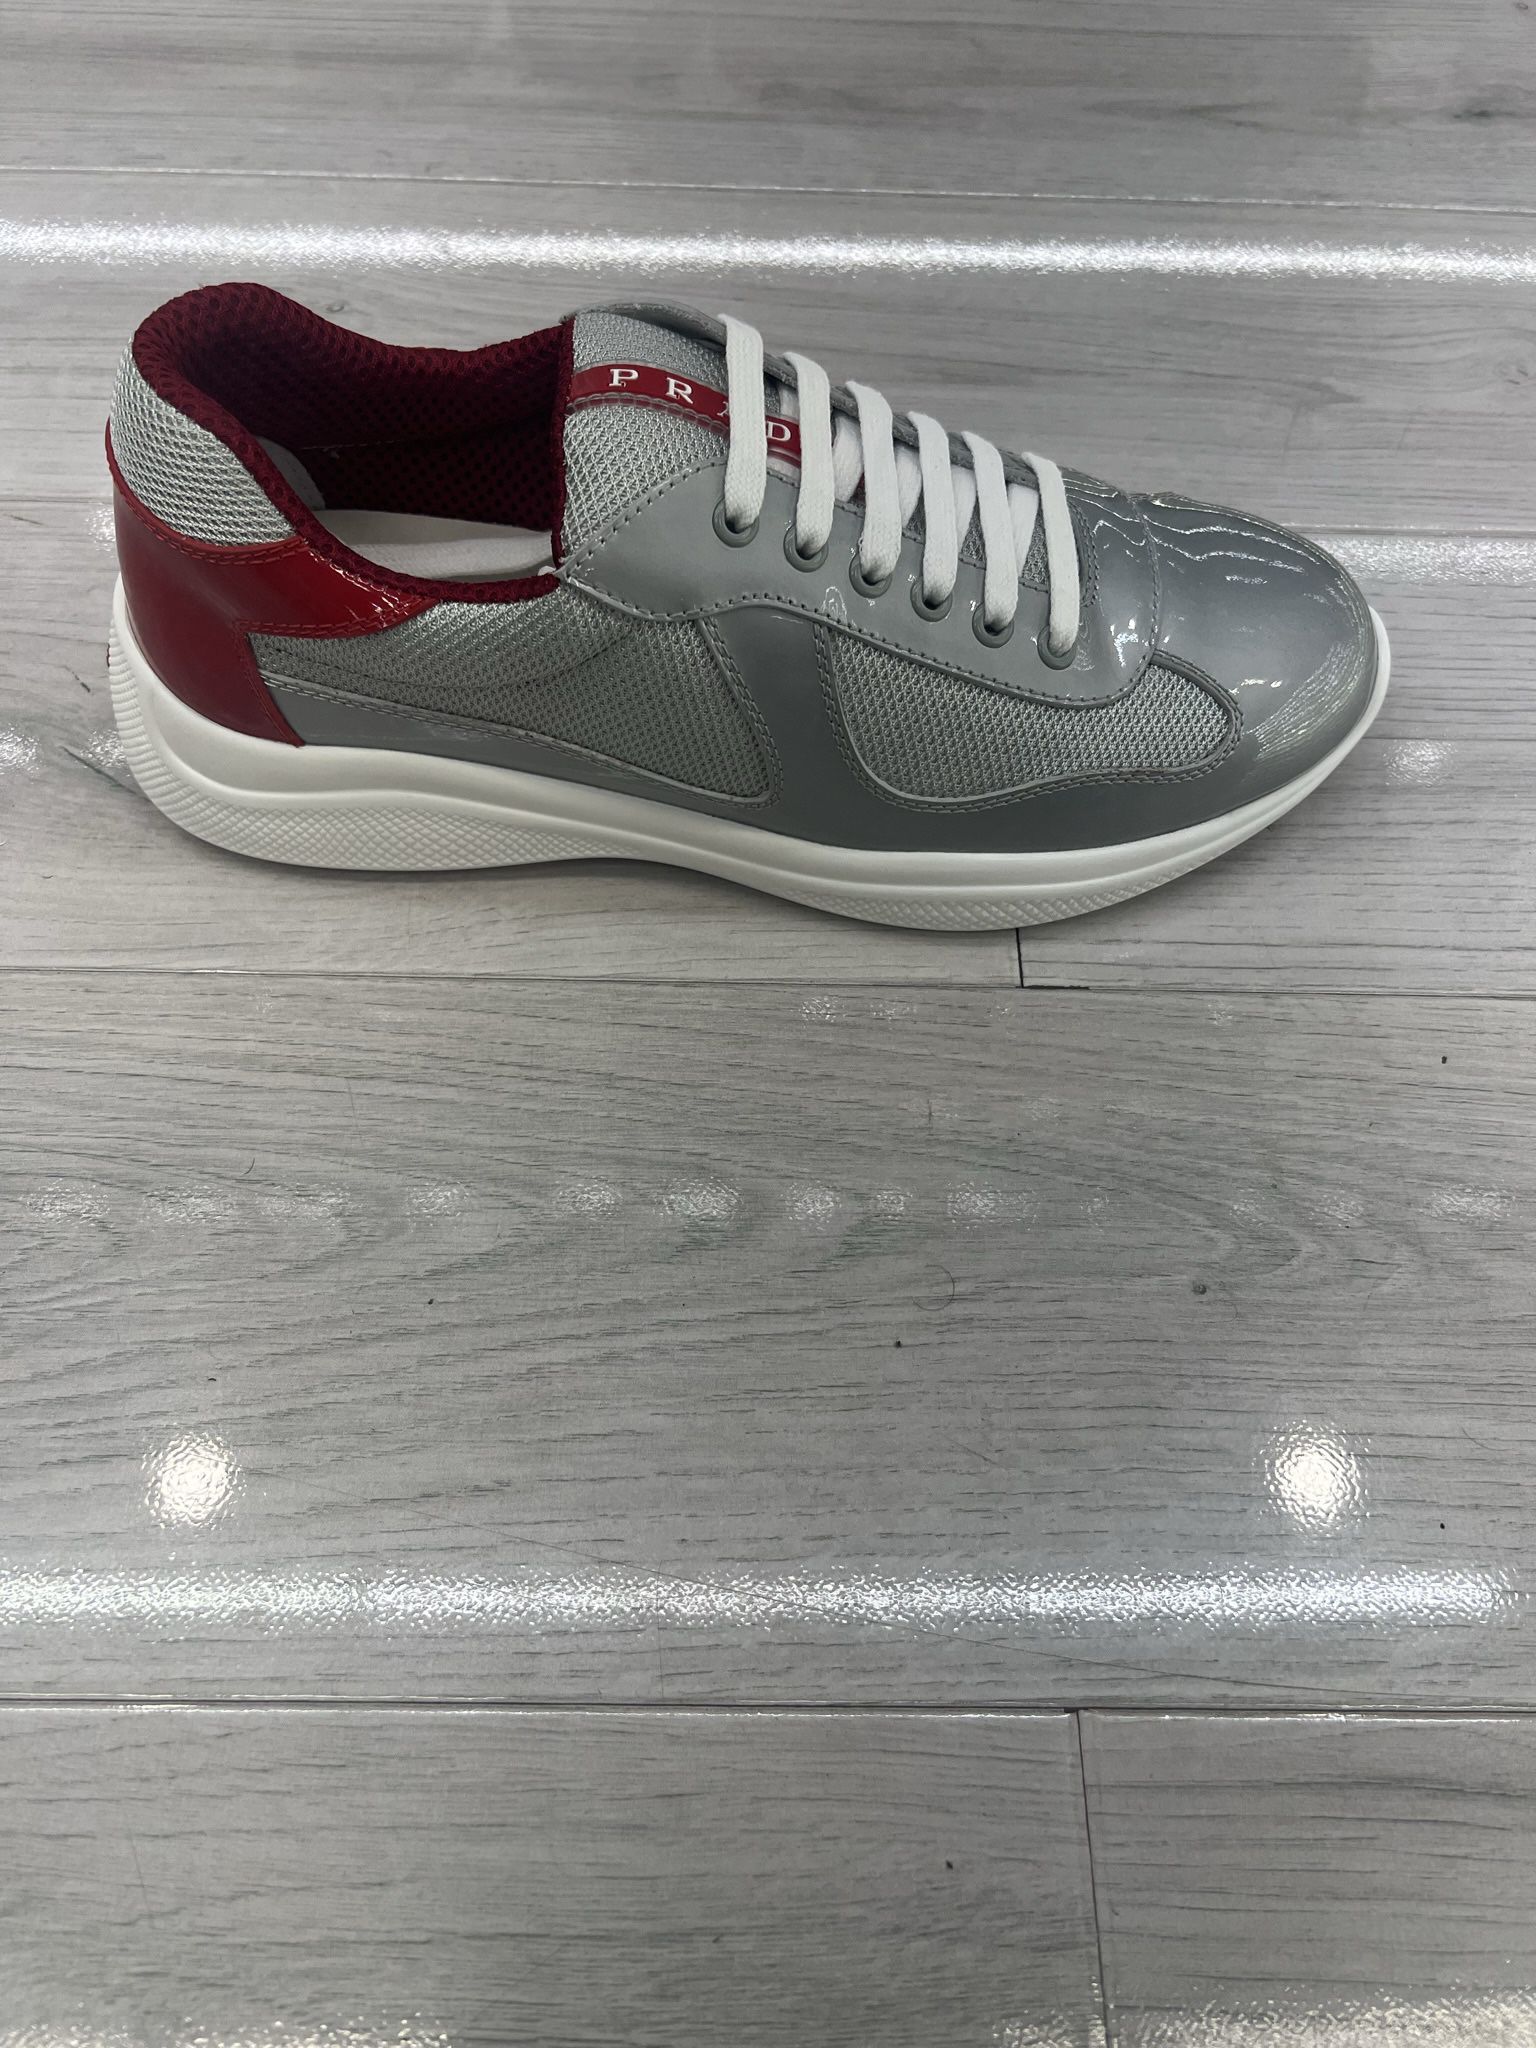 Prada Sneakers Red Grey